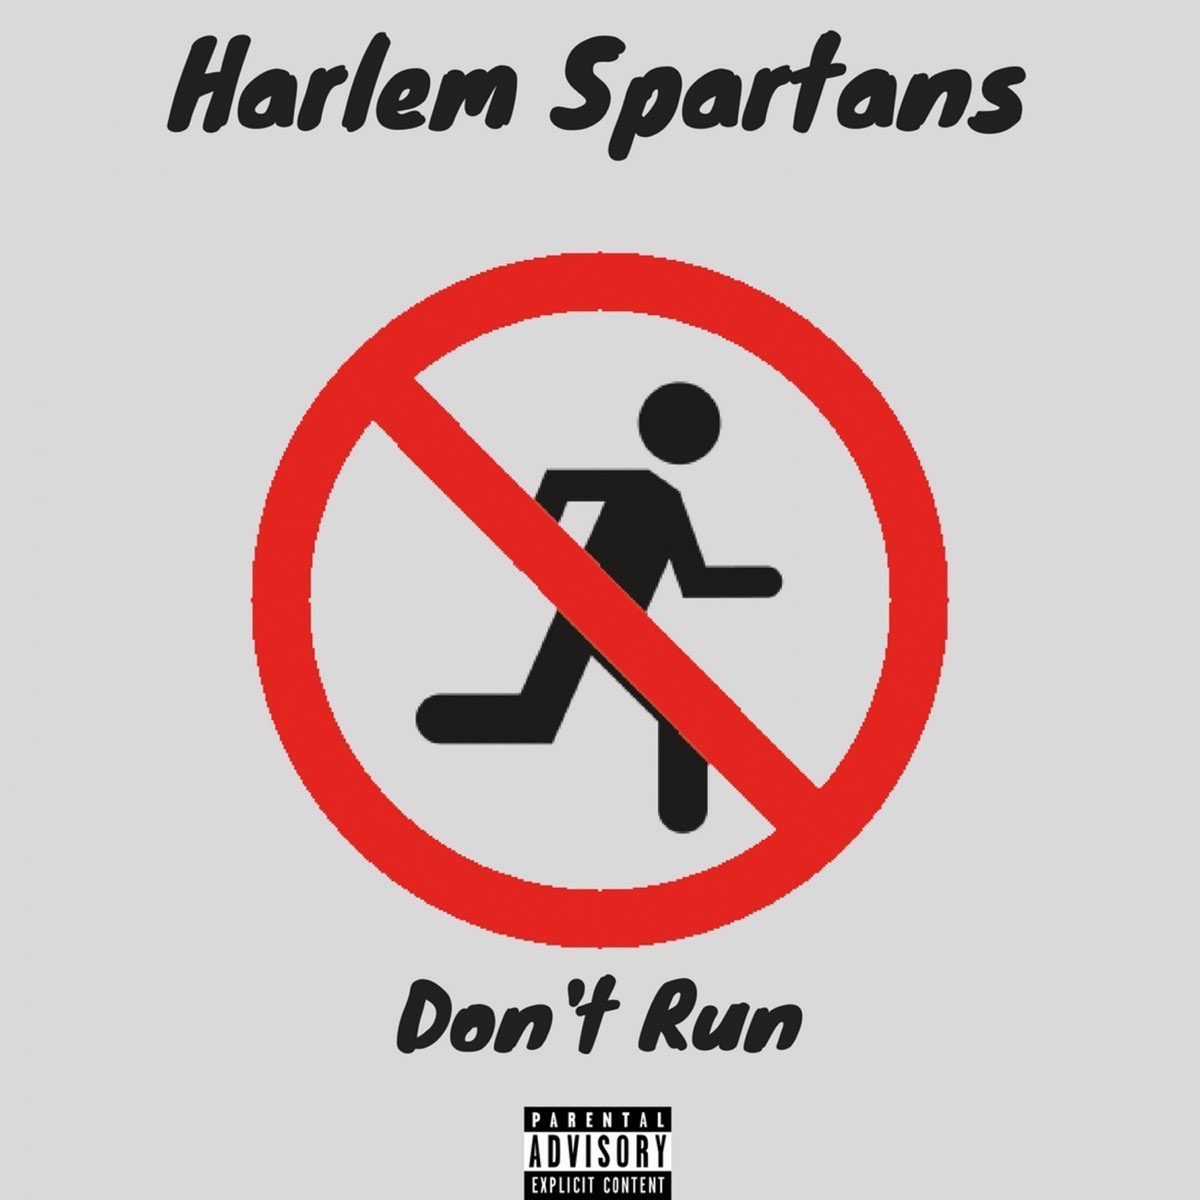 Dont running. Don't Run. Harlem Spartans. Ran didn't Run. Don't Run here.